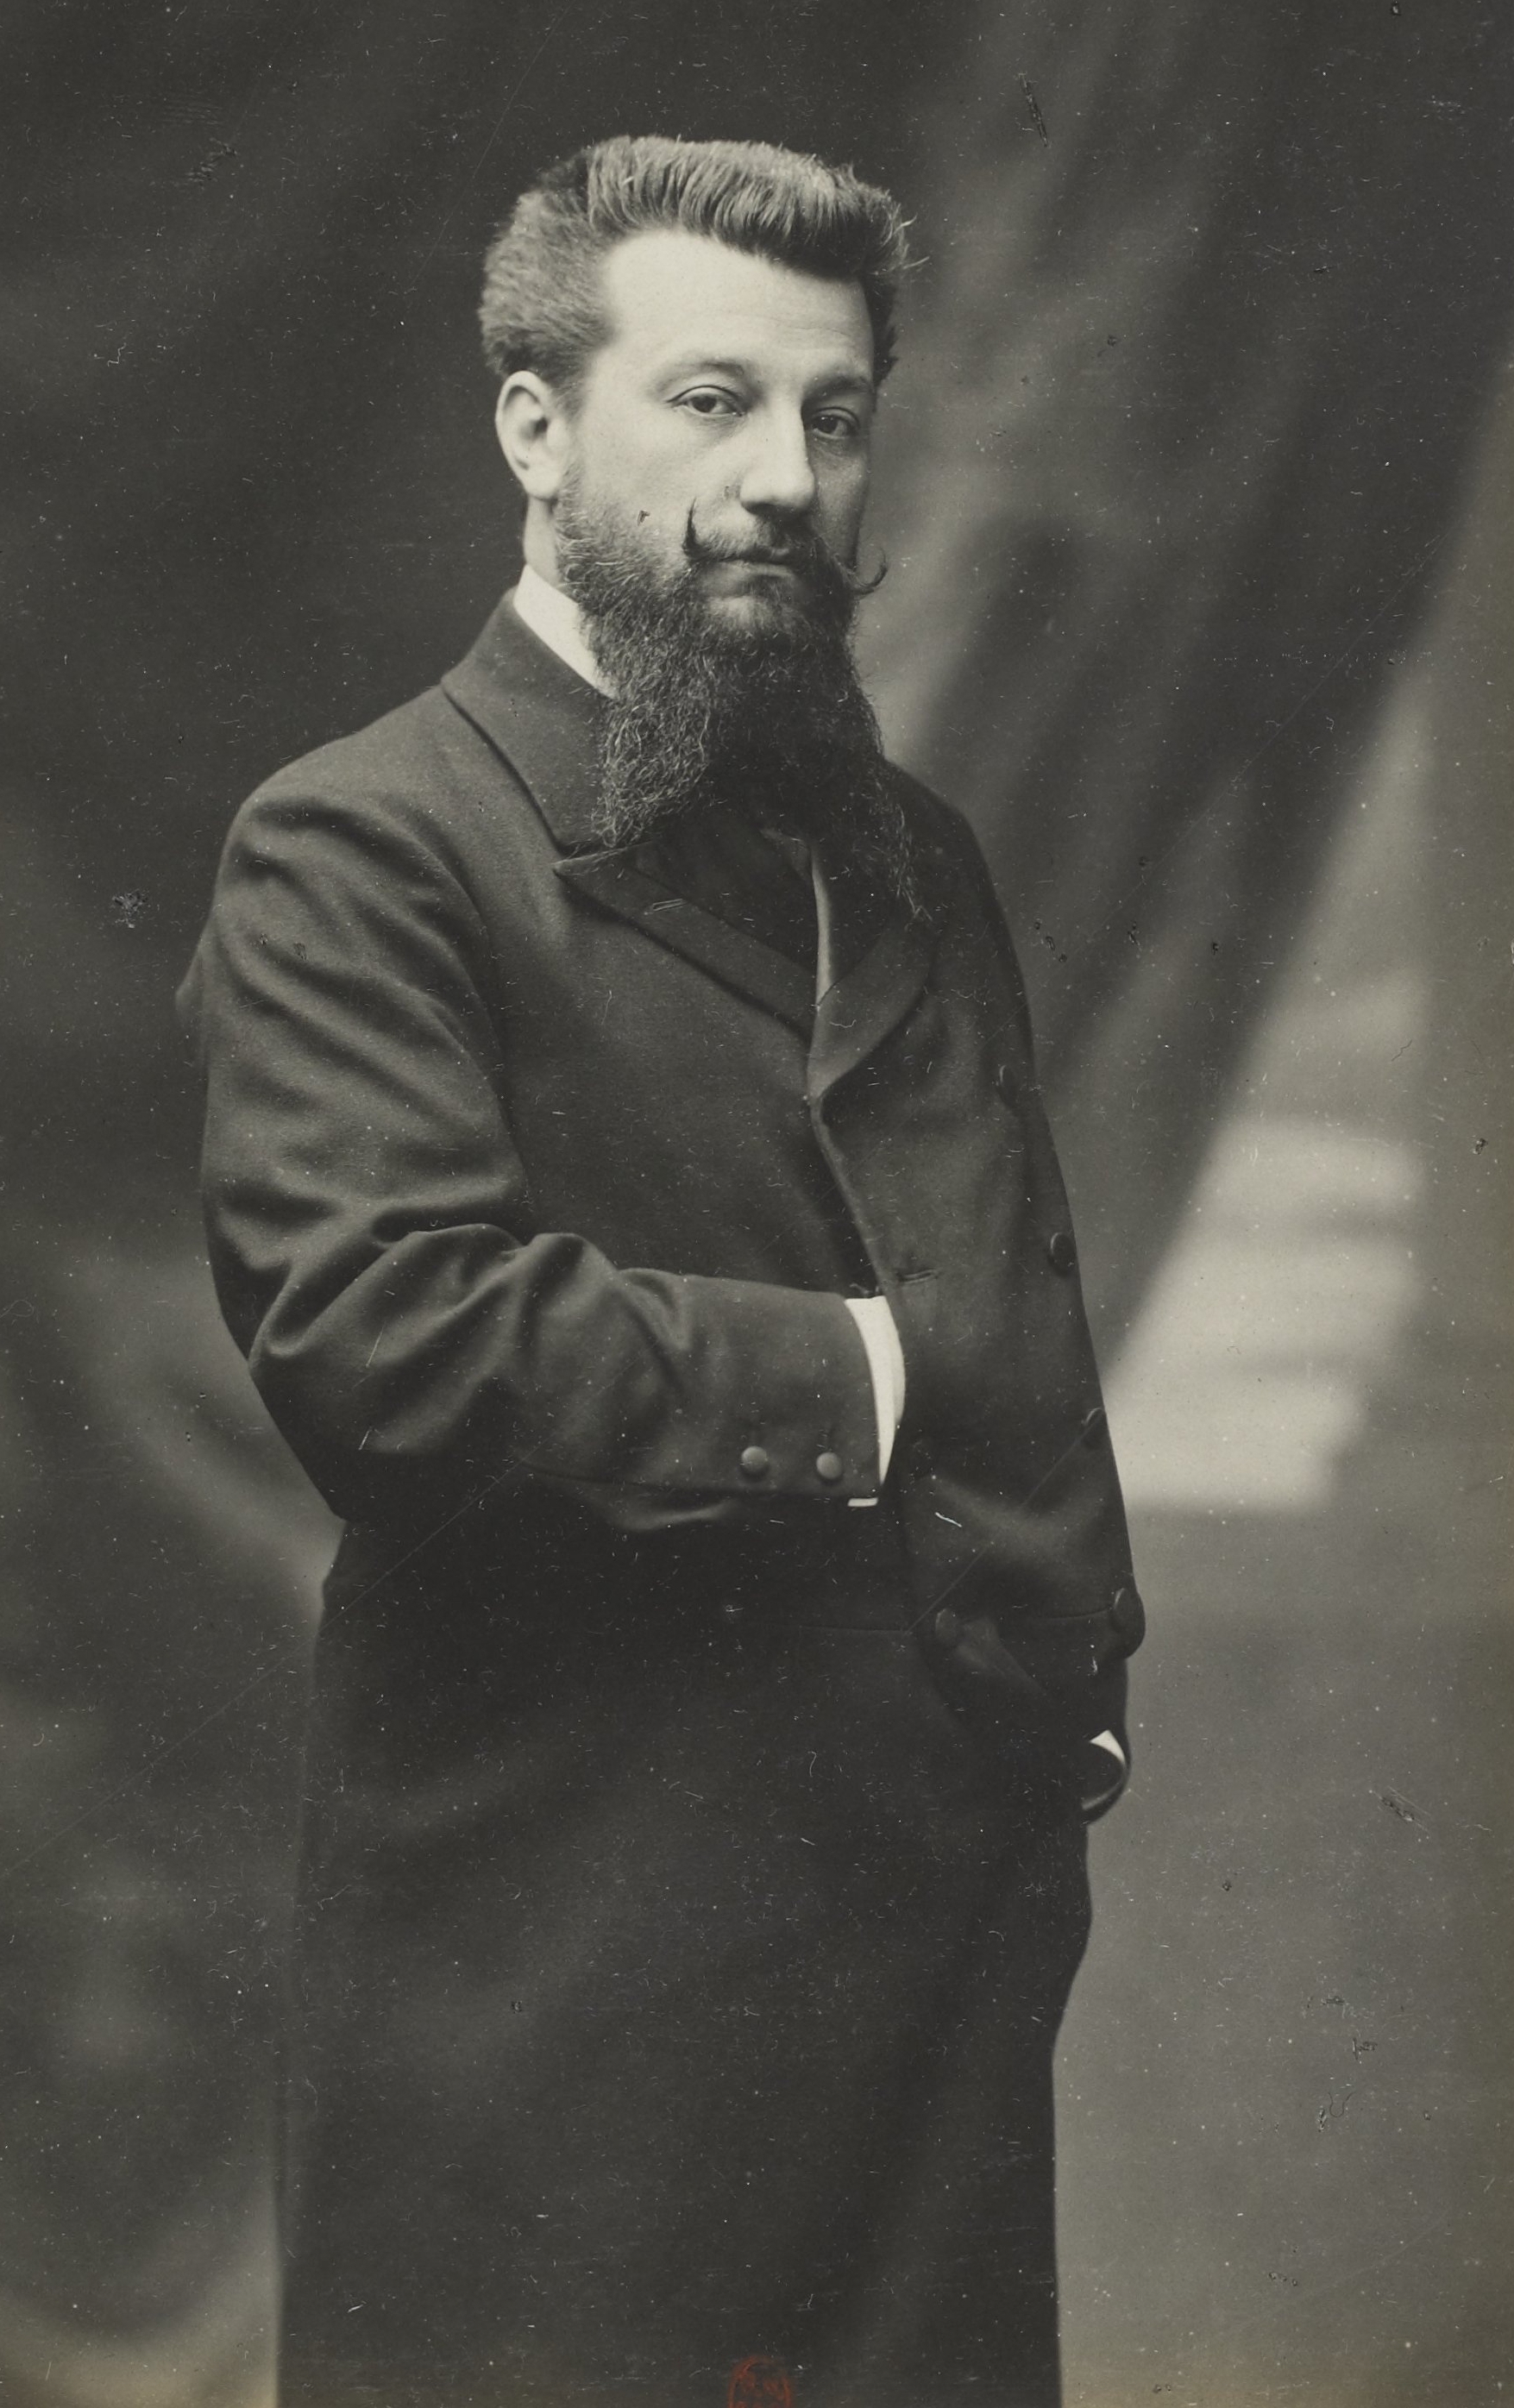 Exposition universelle de 1900 - portraits des commissaires généraux-Vico Mantegazza